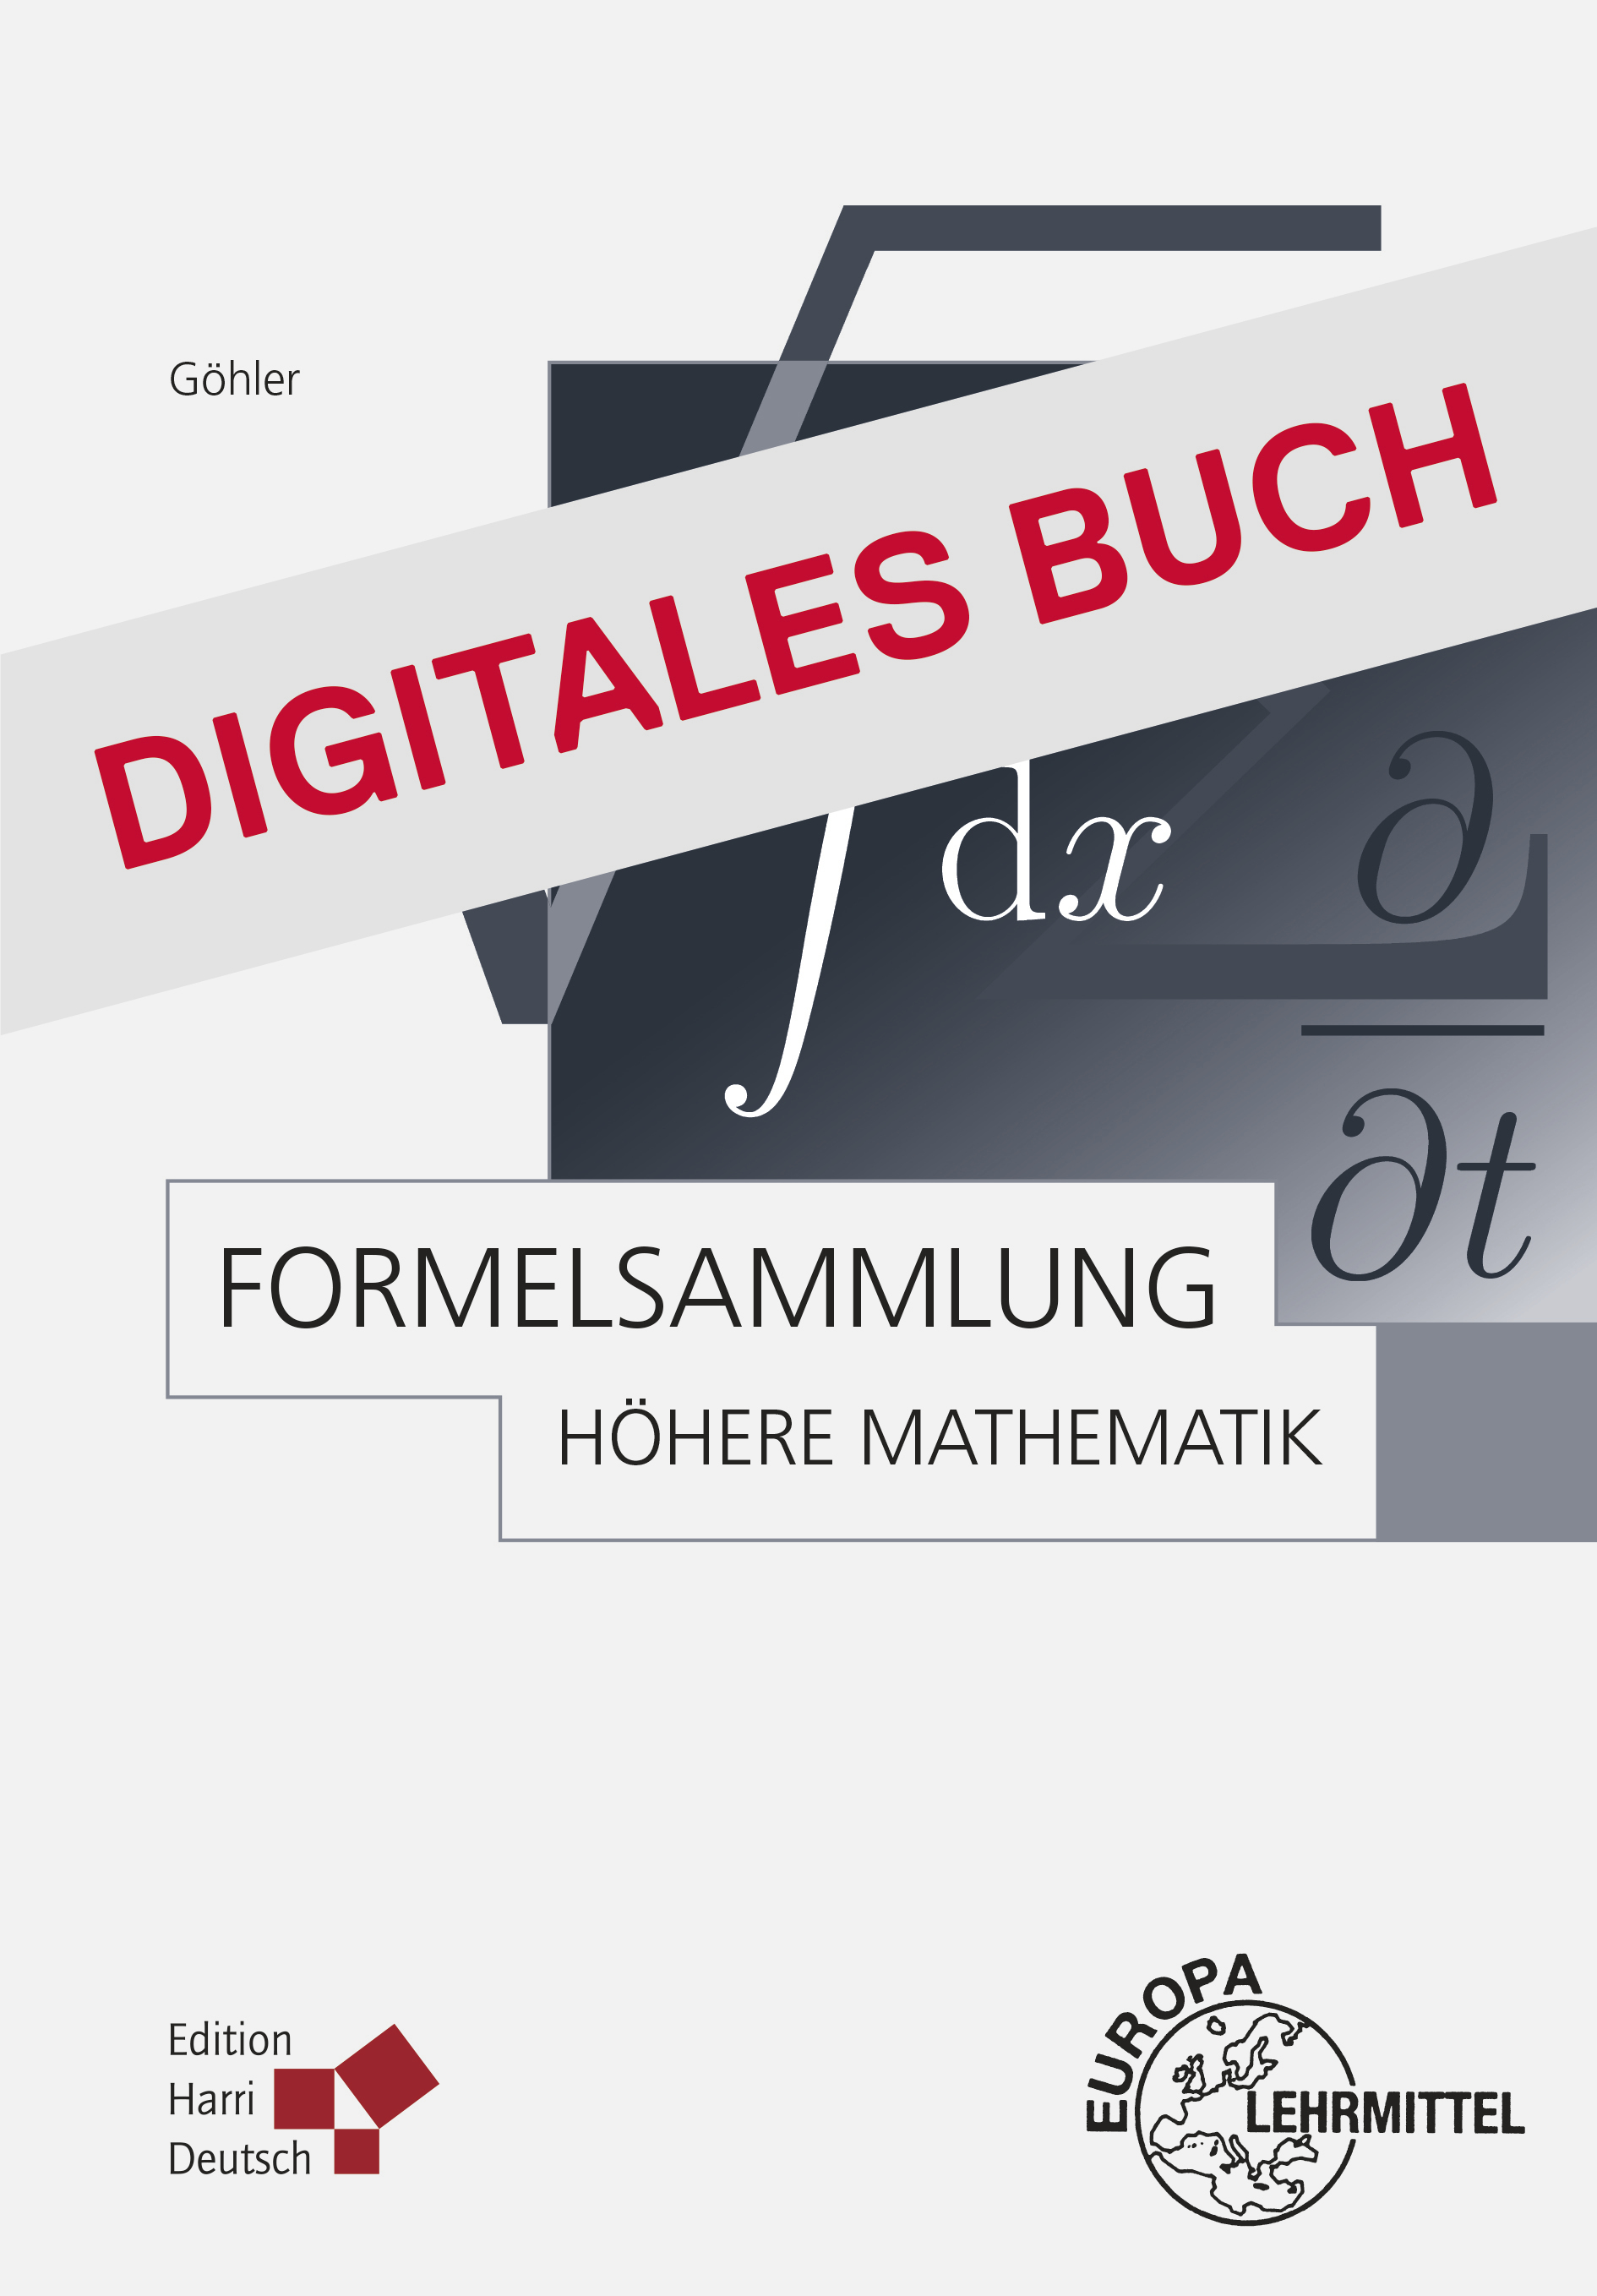 Formelsammlung Höhere Mathematik - Digitales Buch